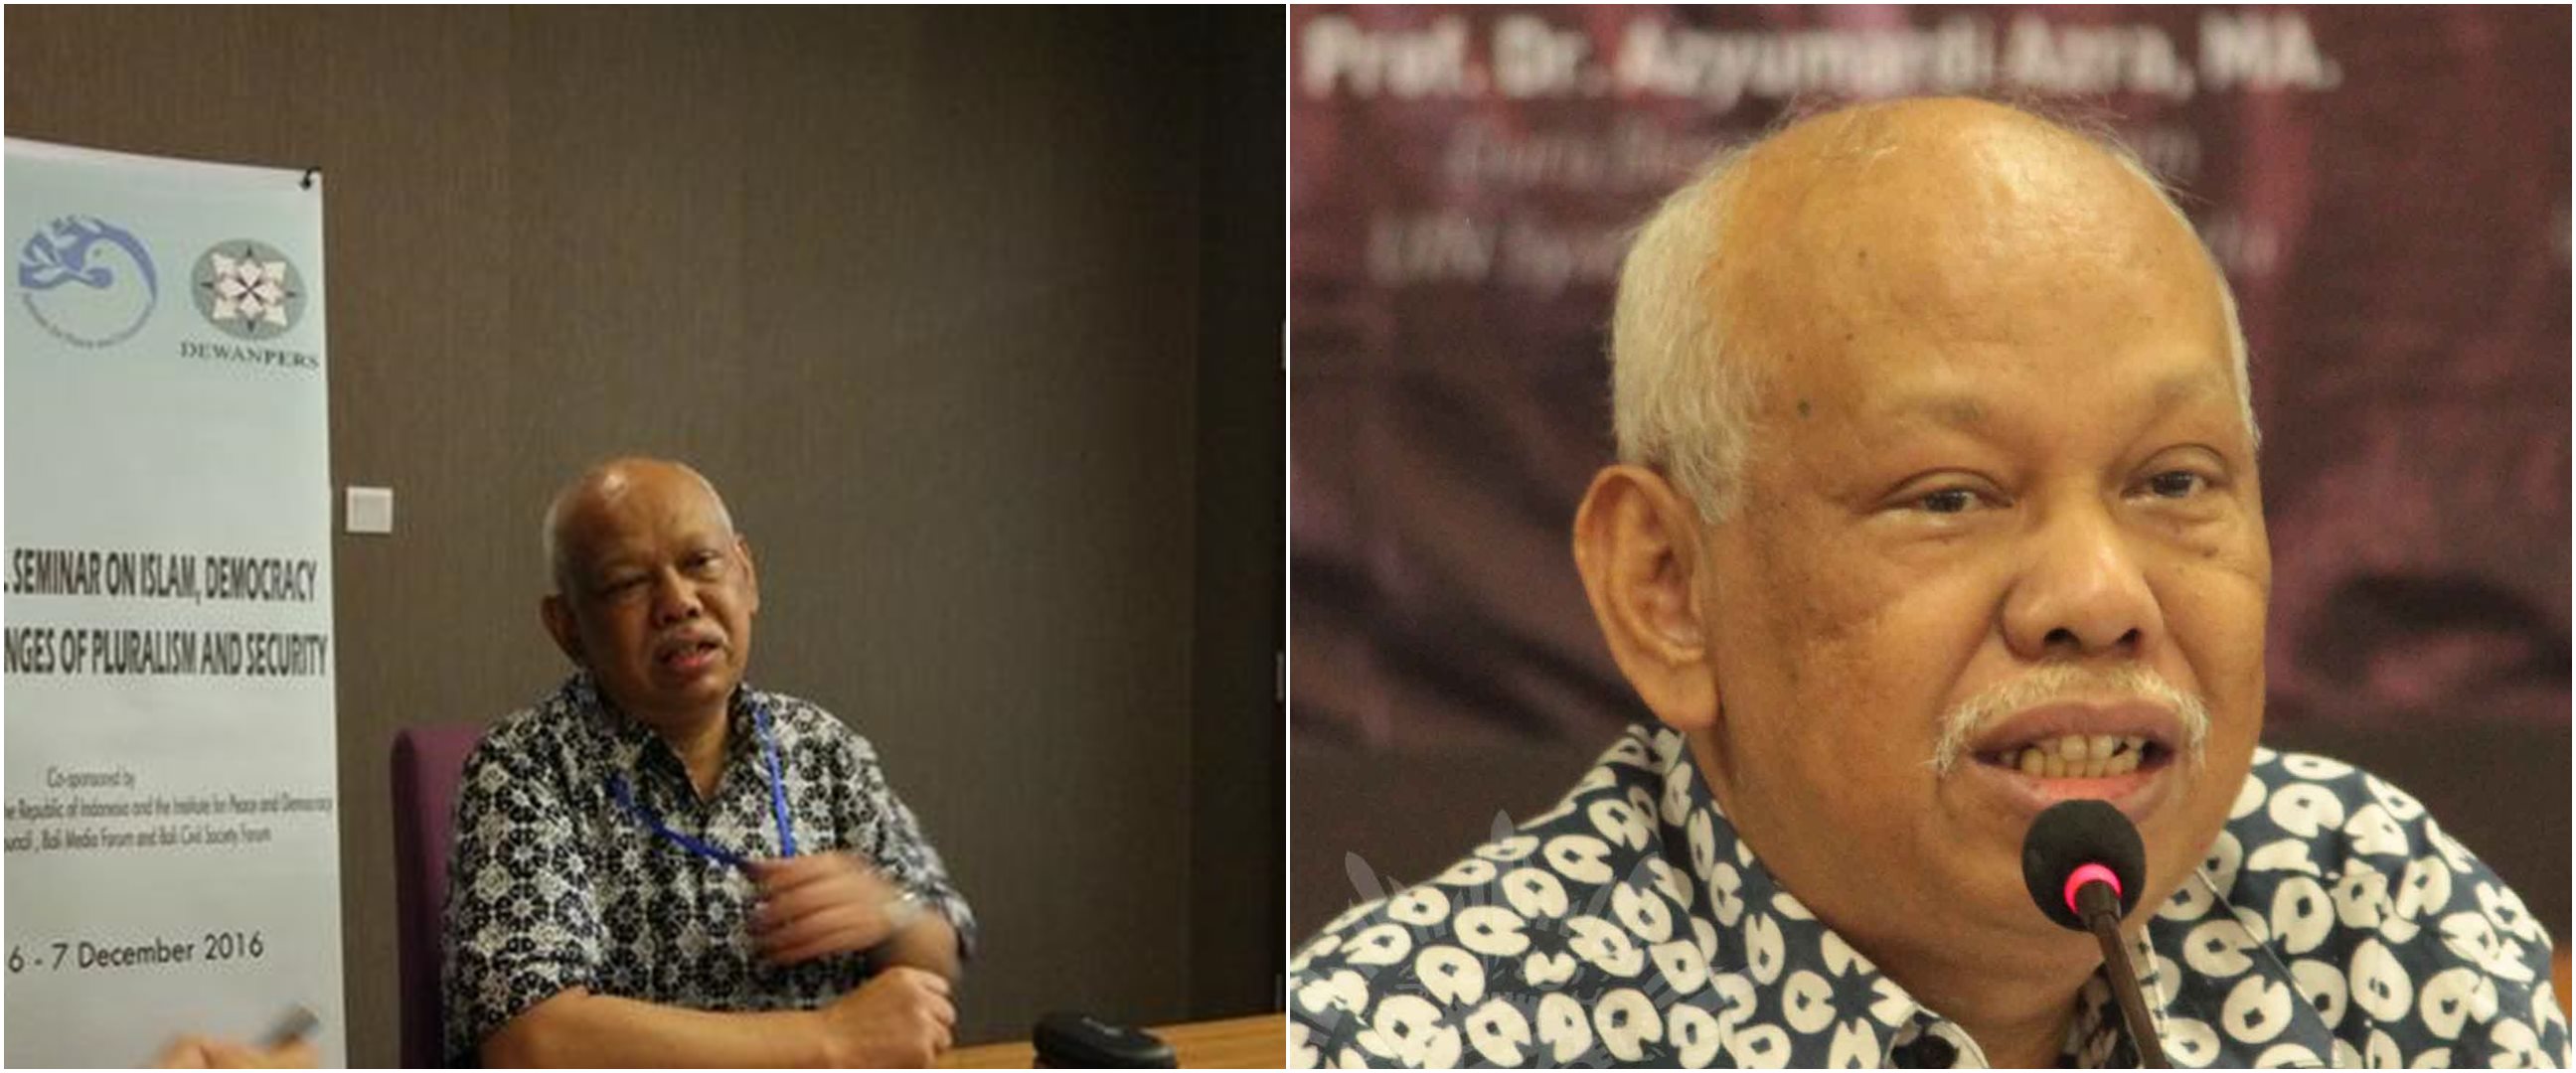 Ketua Dewan Pers Azyumardi Azra meninggal di Malaysia